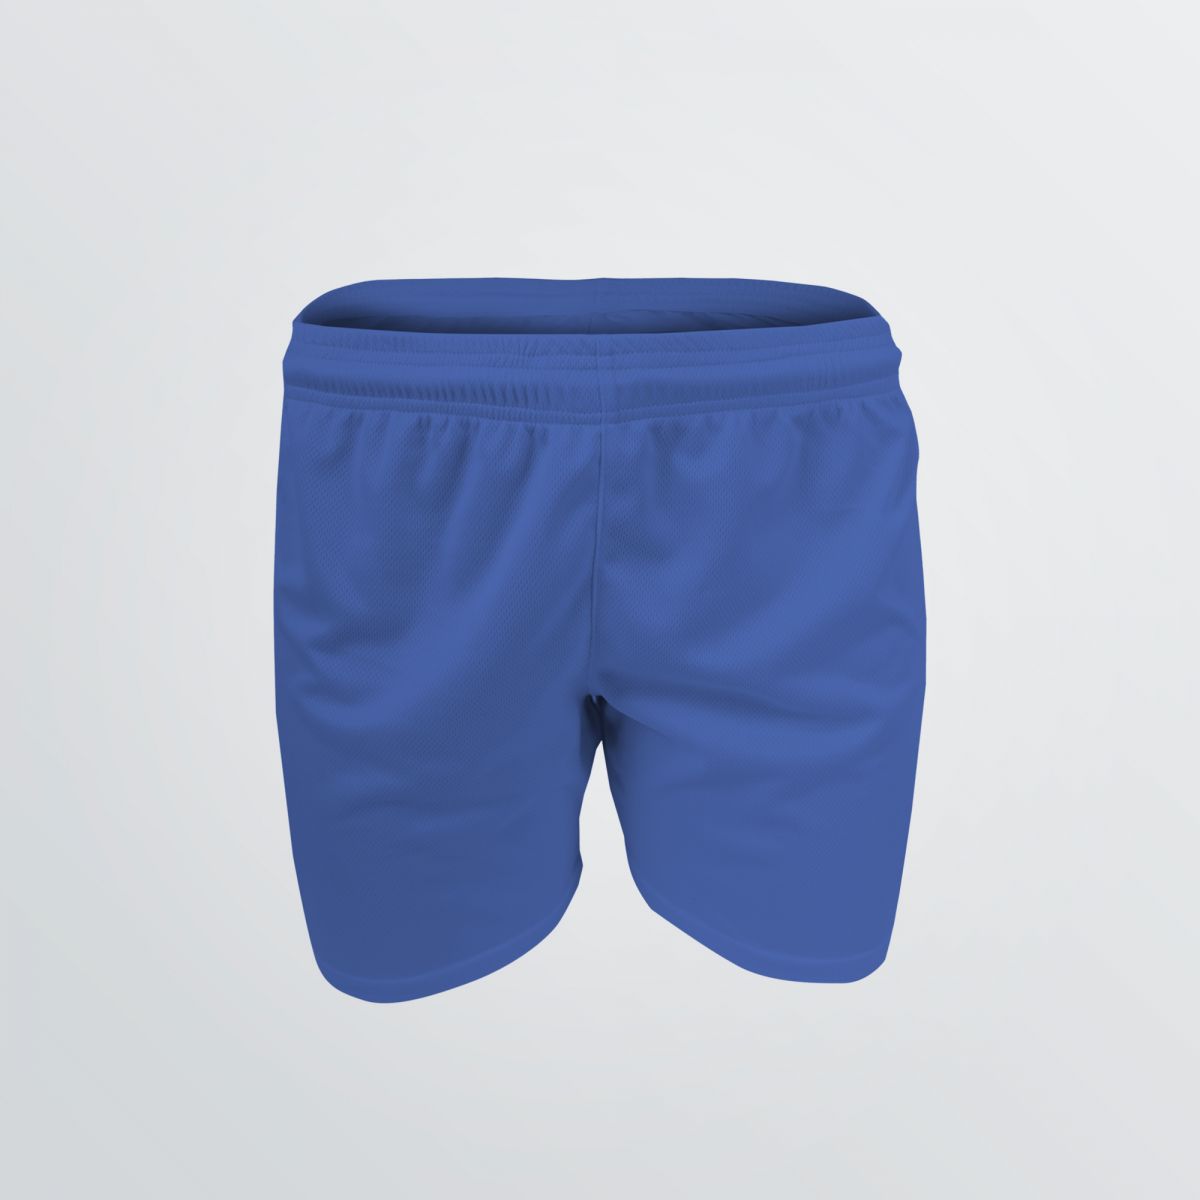 Atmungsaktive Soccer Shorts als kurze Sporthose mit lockerem Sitz zum Individualisieren als Produktbeispiel in blau